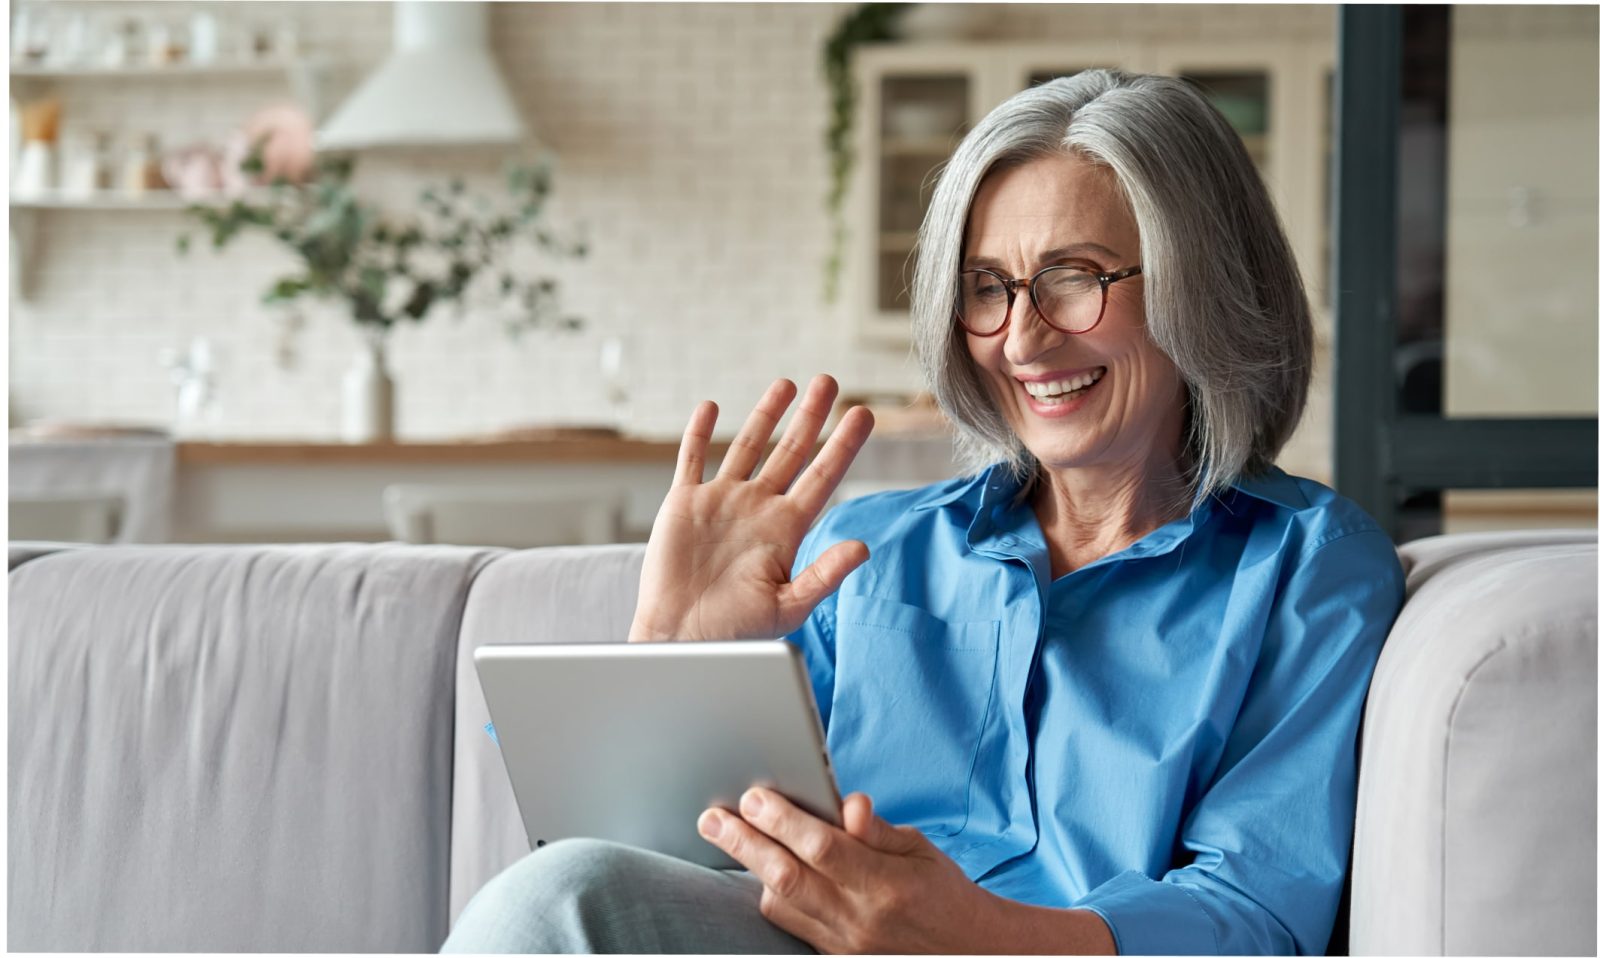 Mulher branca de cabelos brancos, usando óculos redondo marrom, vestindo uma camisa azul, sentada em um sofá cinza, enquanto segura um tablet cinza com a mão esquerda e acena com a mão direita, sorrindo para a tela